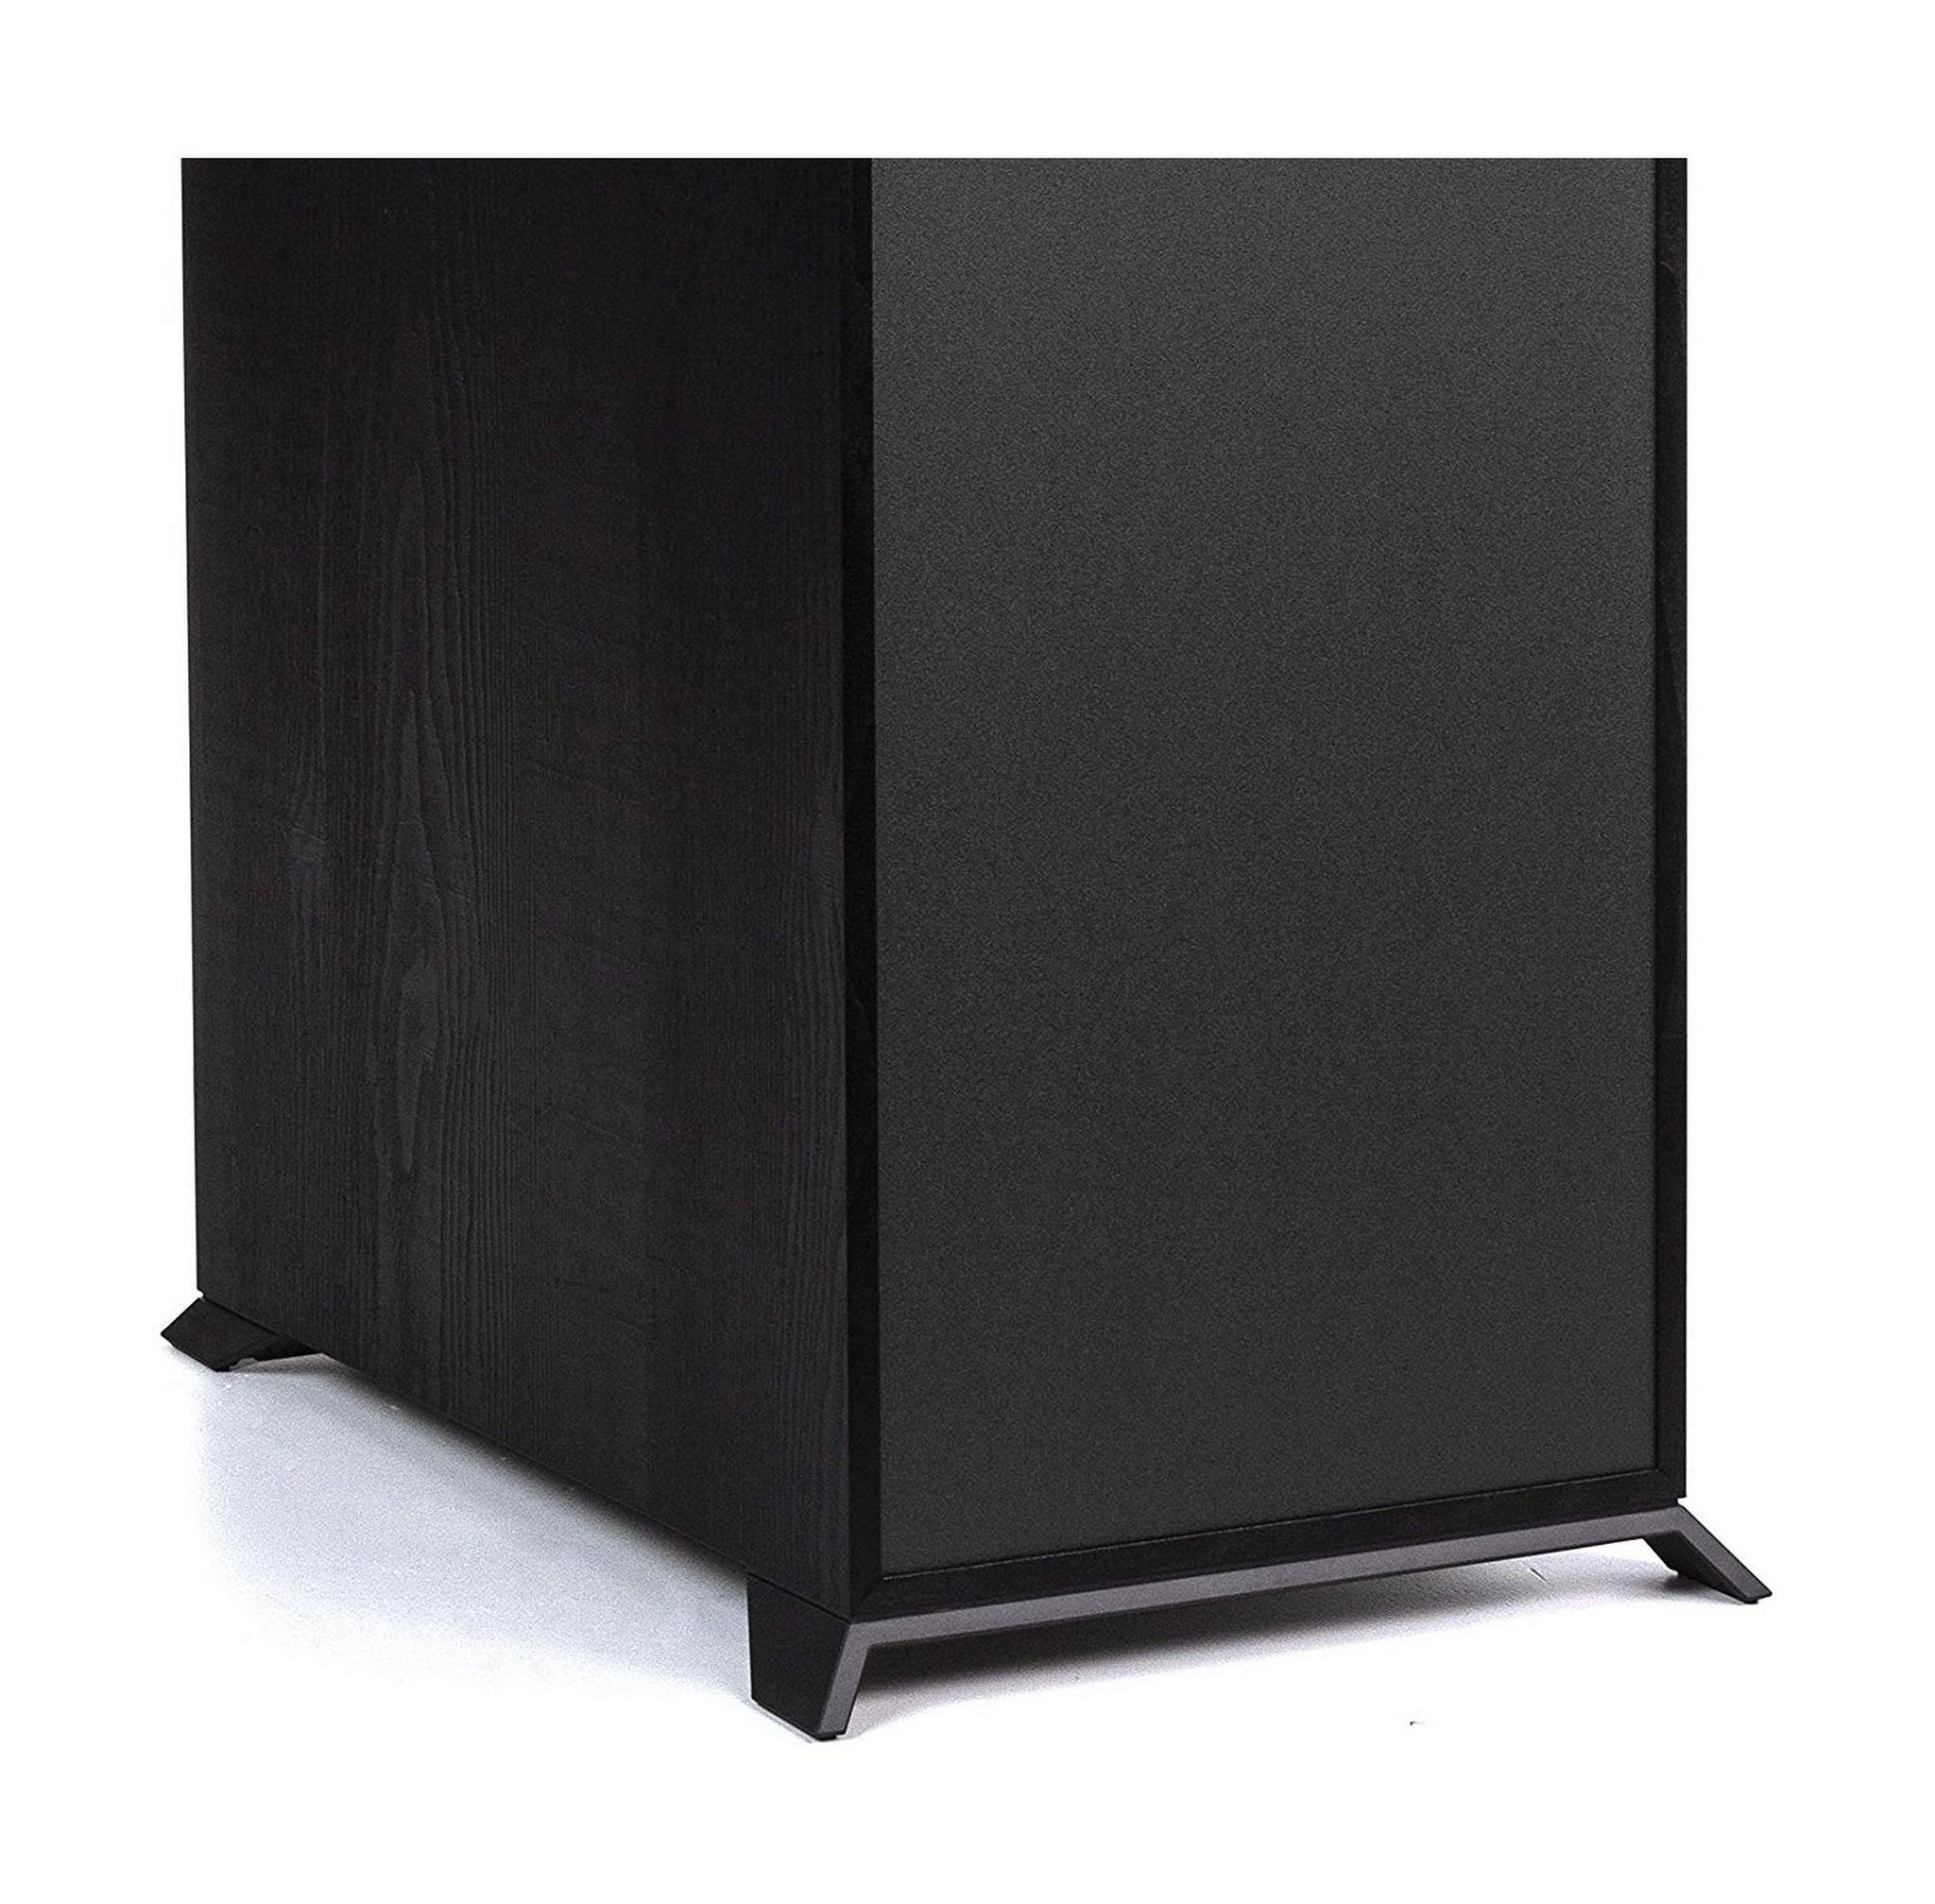 Klipsch R-820F Floorstanding Speaker - Black